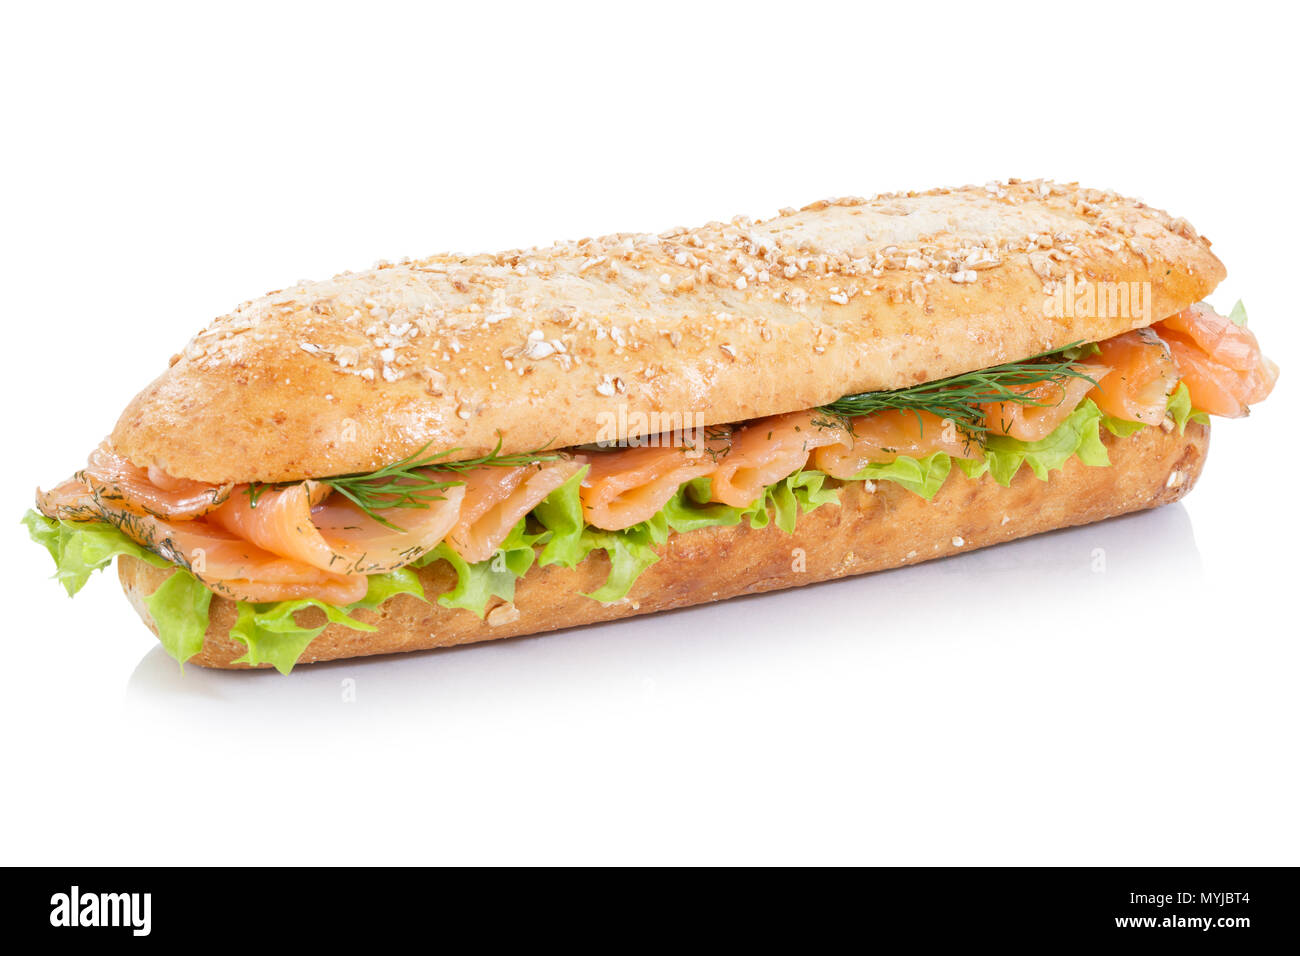 Sous la baguette de grains entiers sandwich au saumon fumé poisson isolé sur fond blanc Banque D'Images